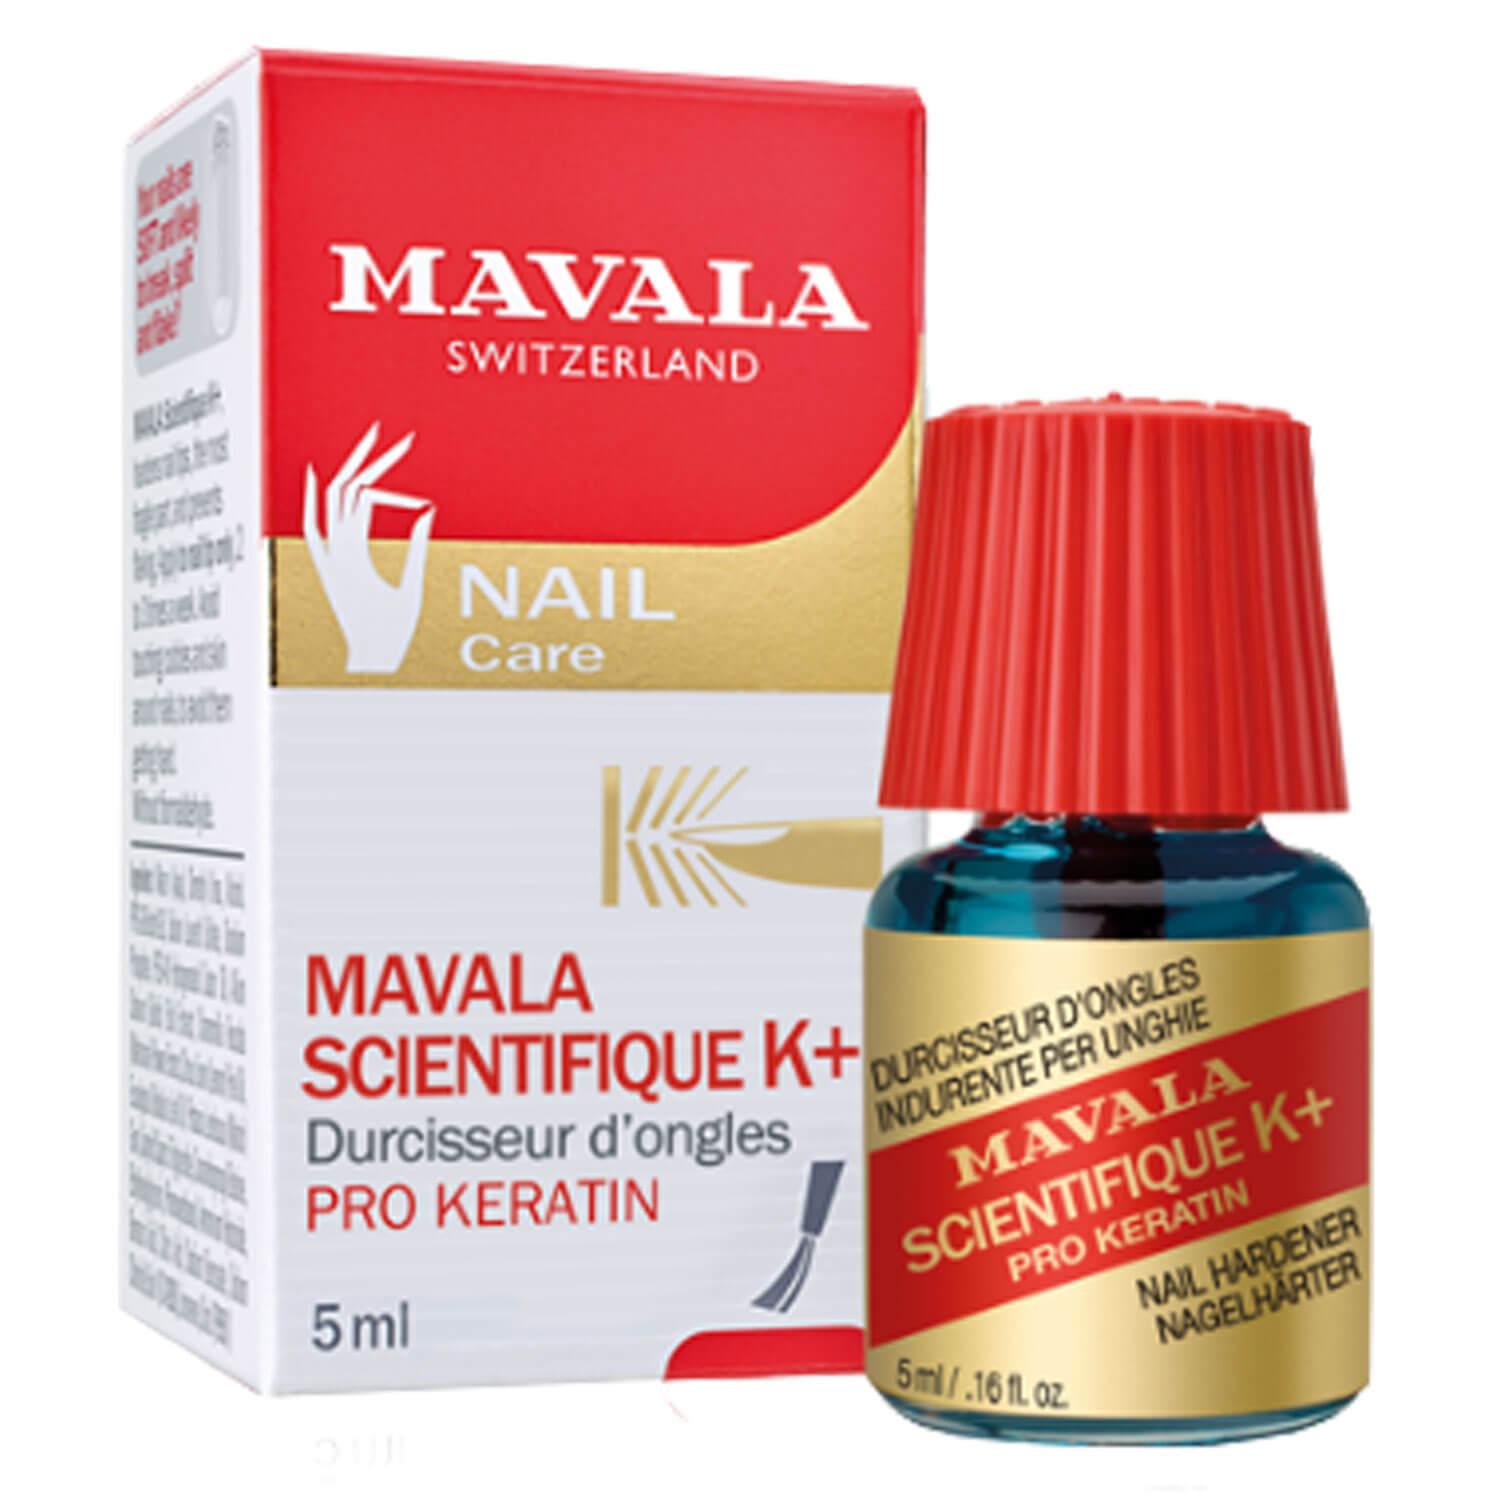 MAVALA Care - Scientifique Nagelhärter K+